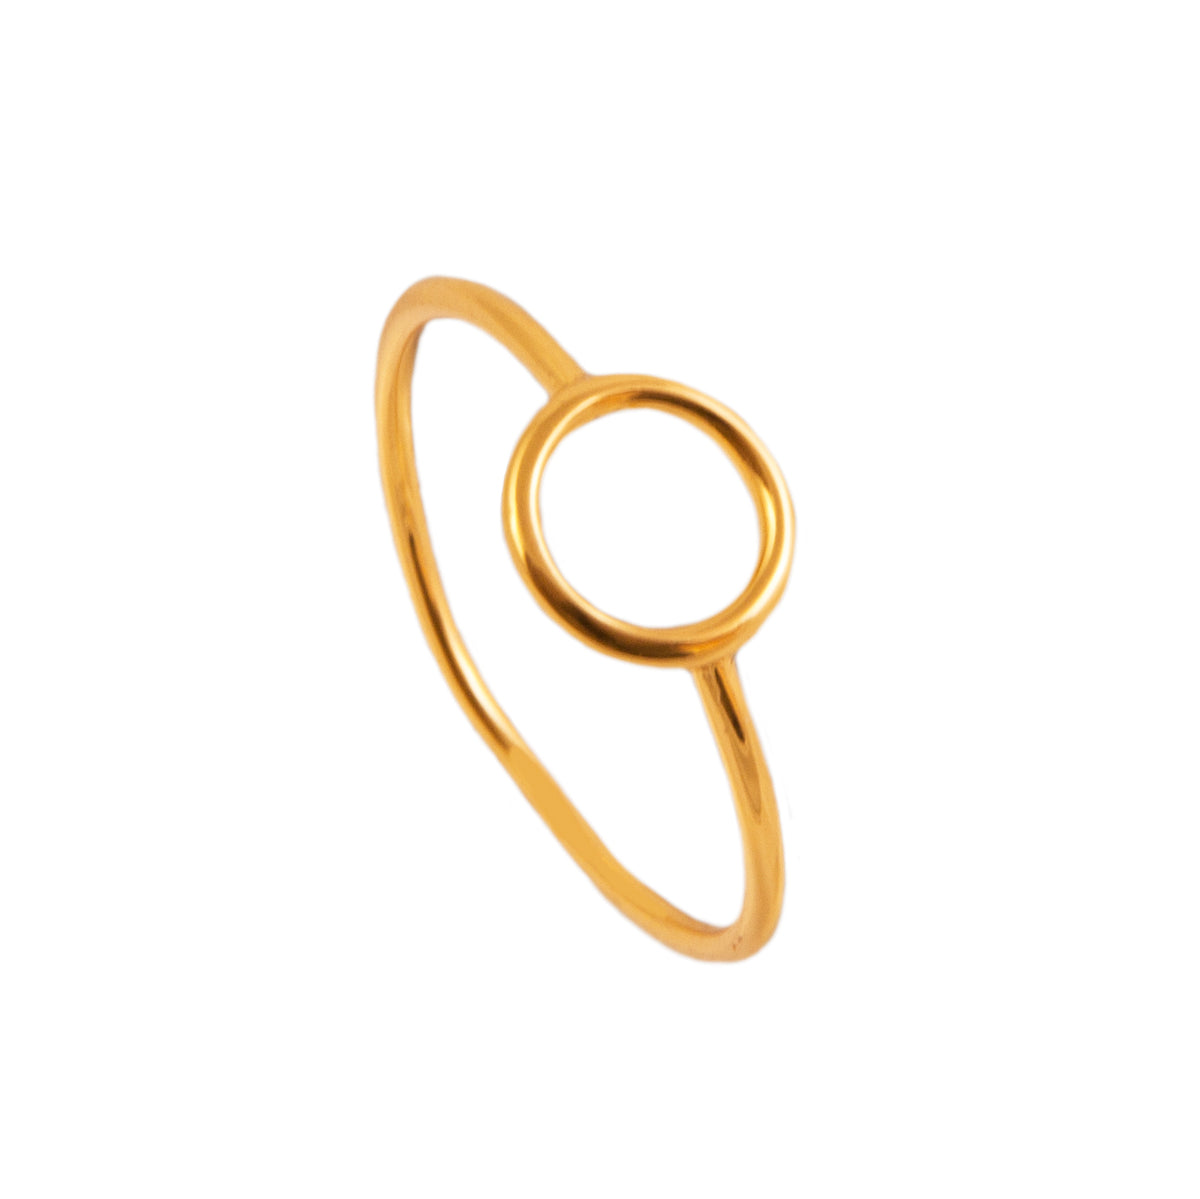 Circle ring gold